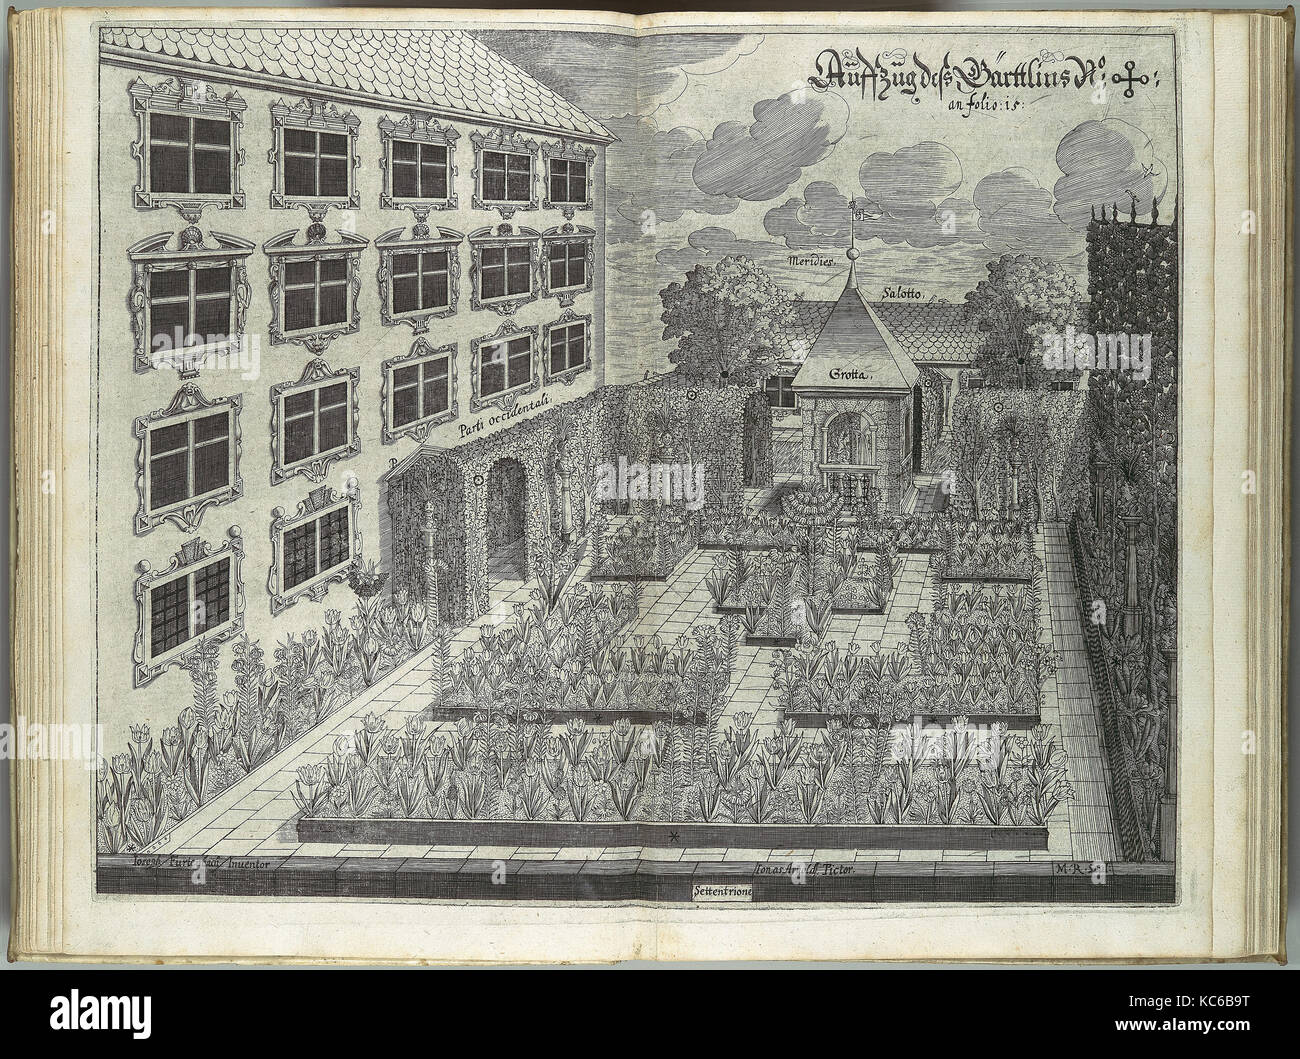 Architectura Privata: Das is Gründtliche Beschreibung...in was form...ein Burgerliches Wohn-Haus..., 1641 Stock Photo